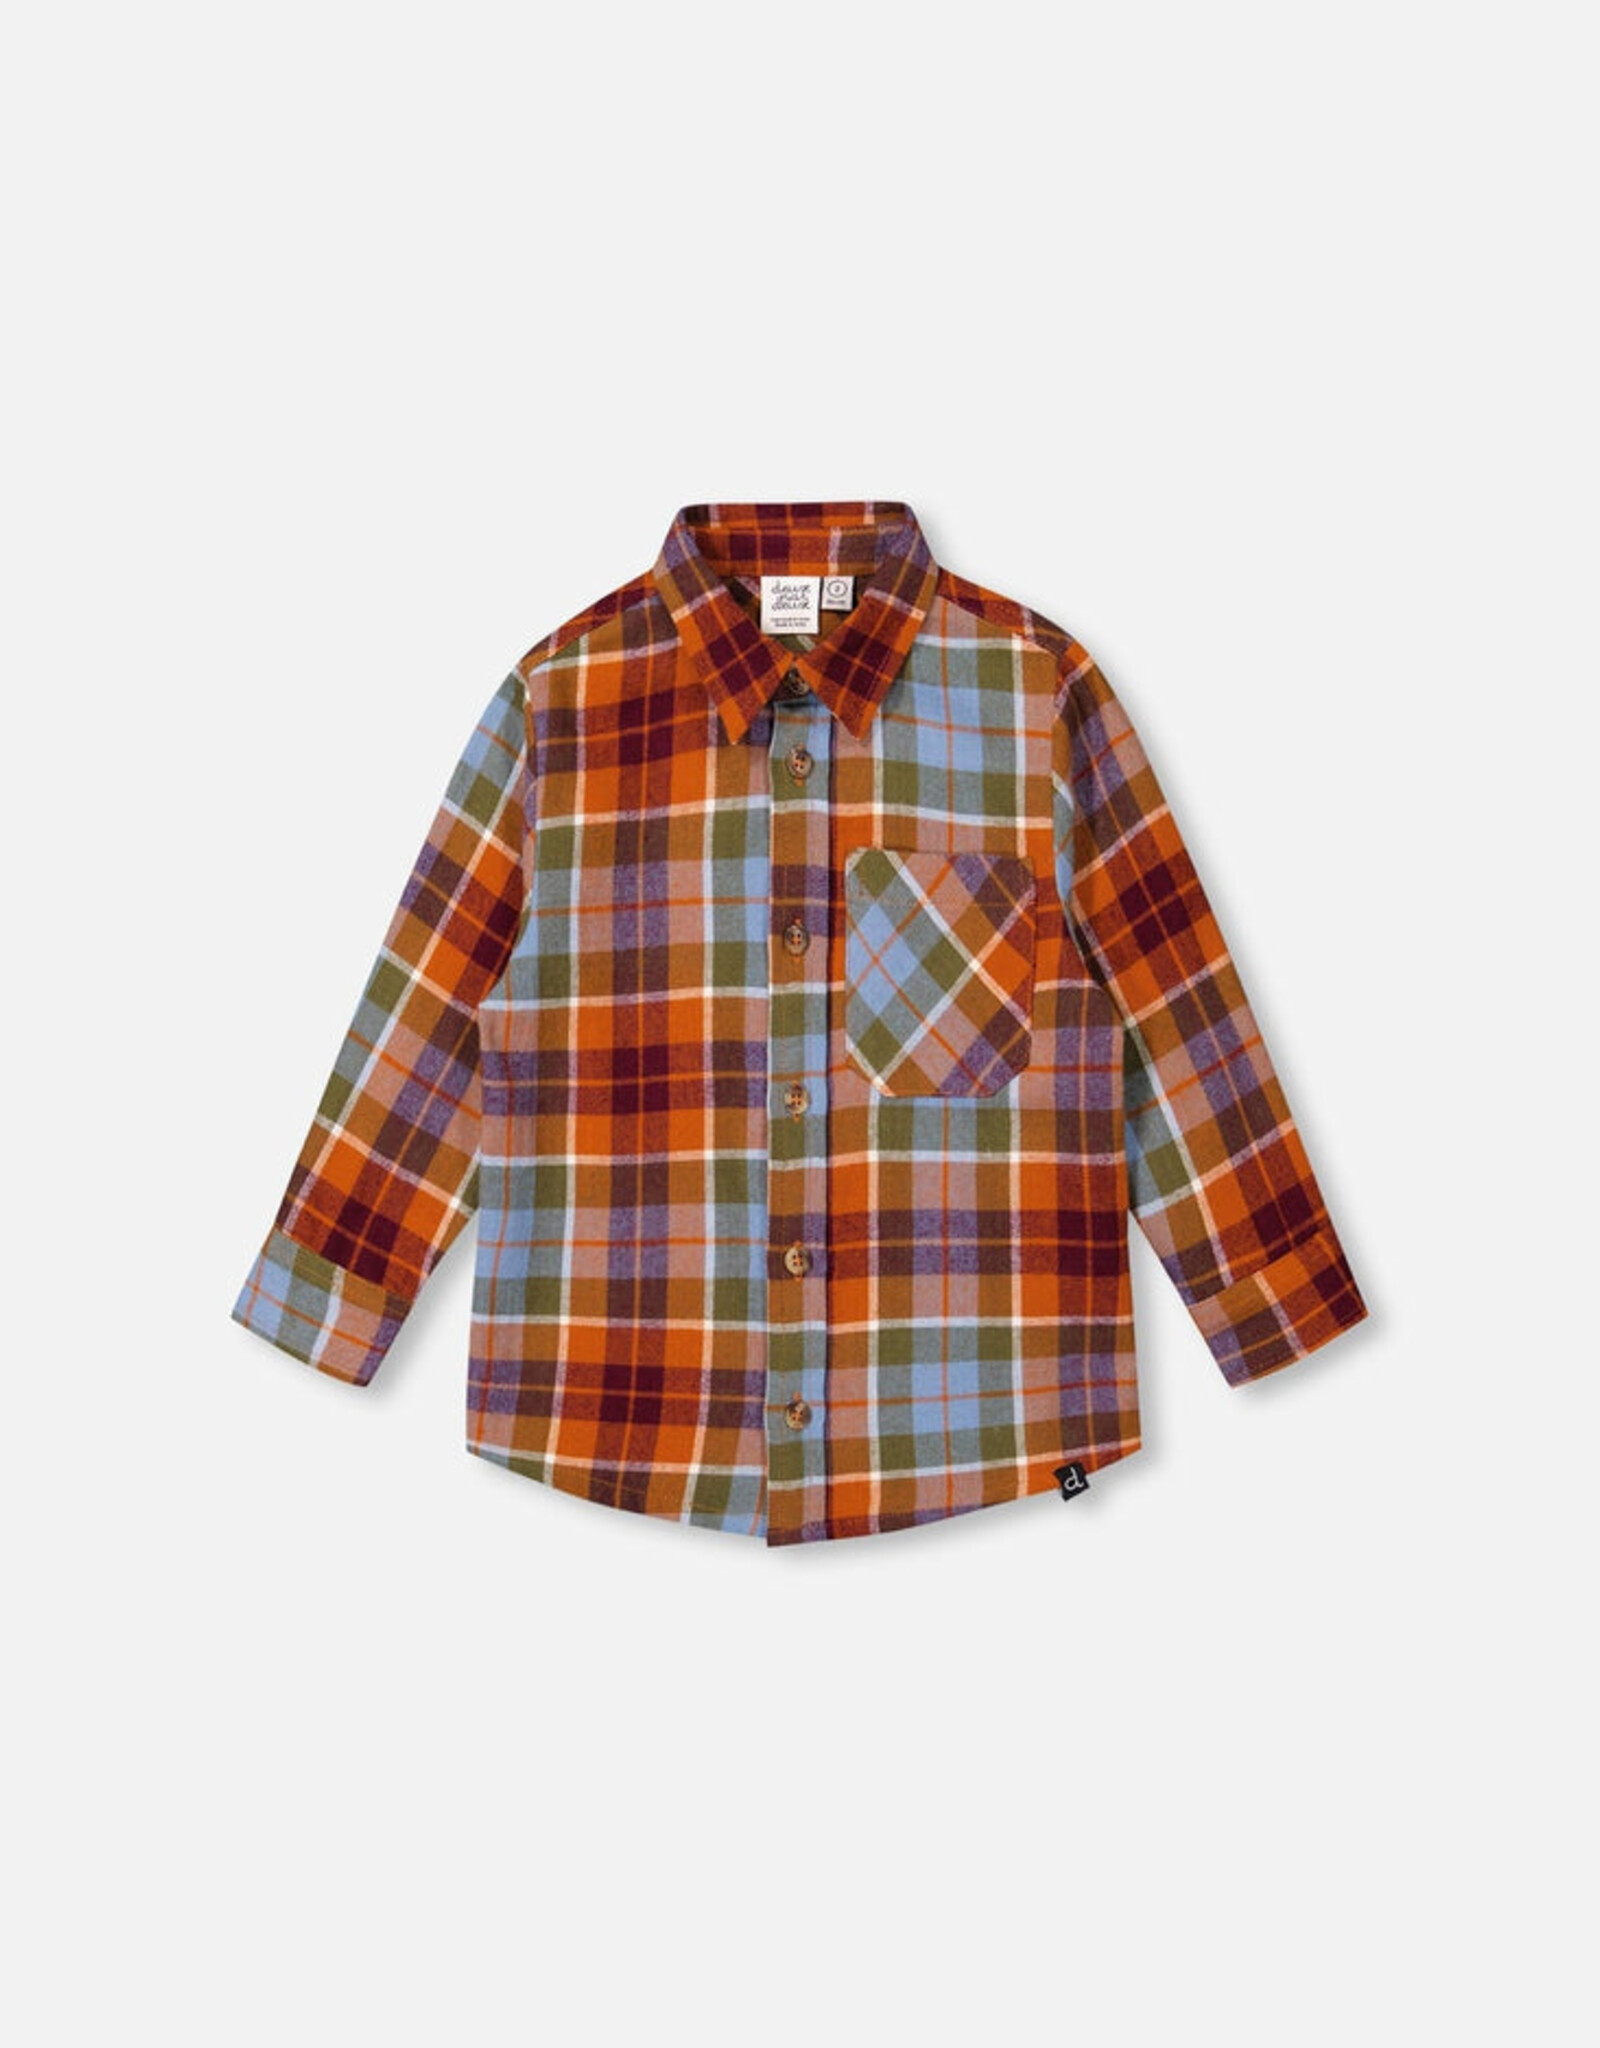 DeuxParDeux FA23 B Flannel Plaid Shirt